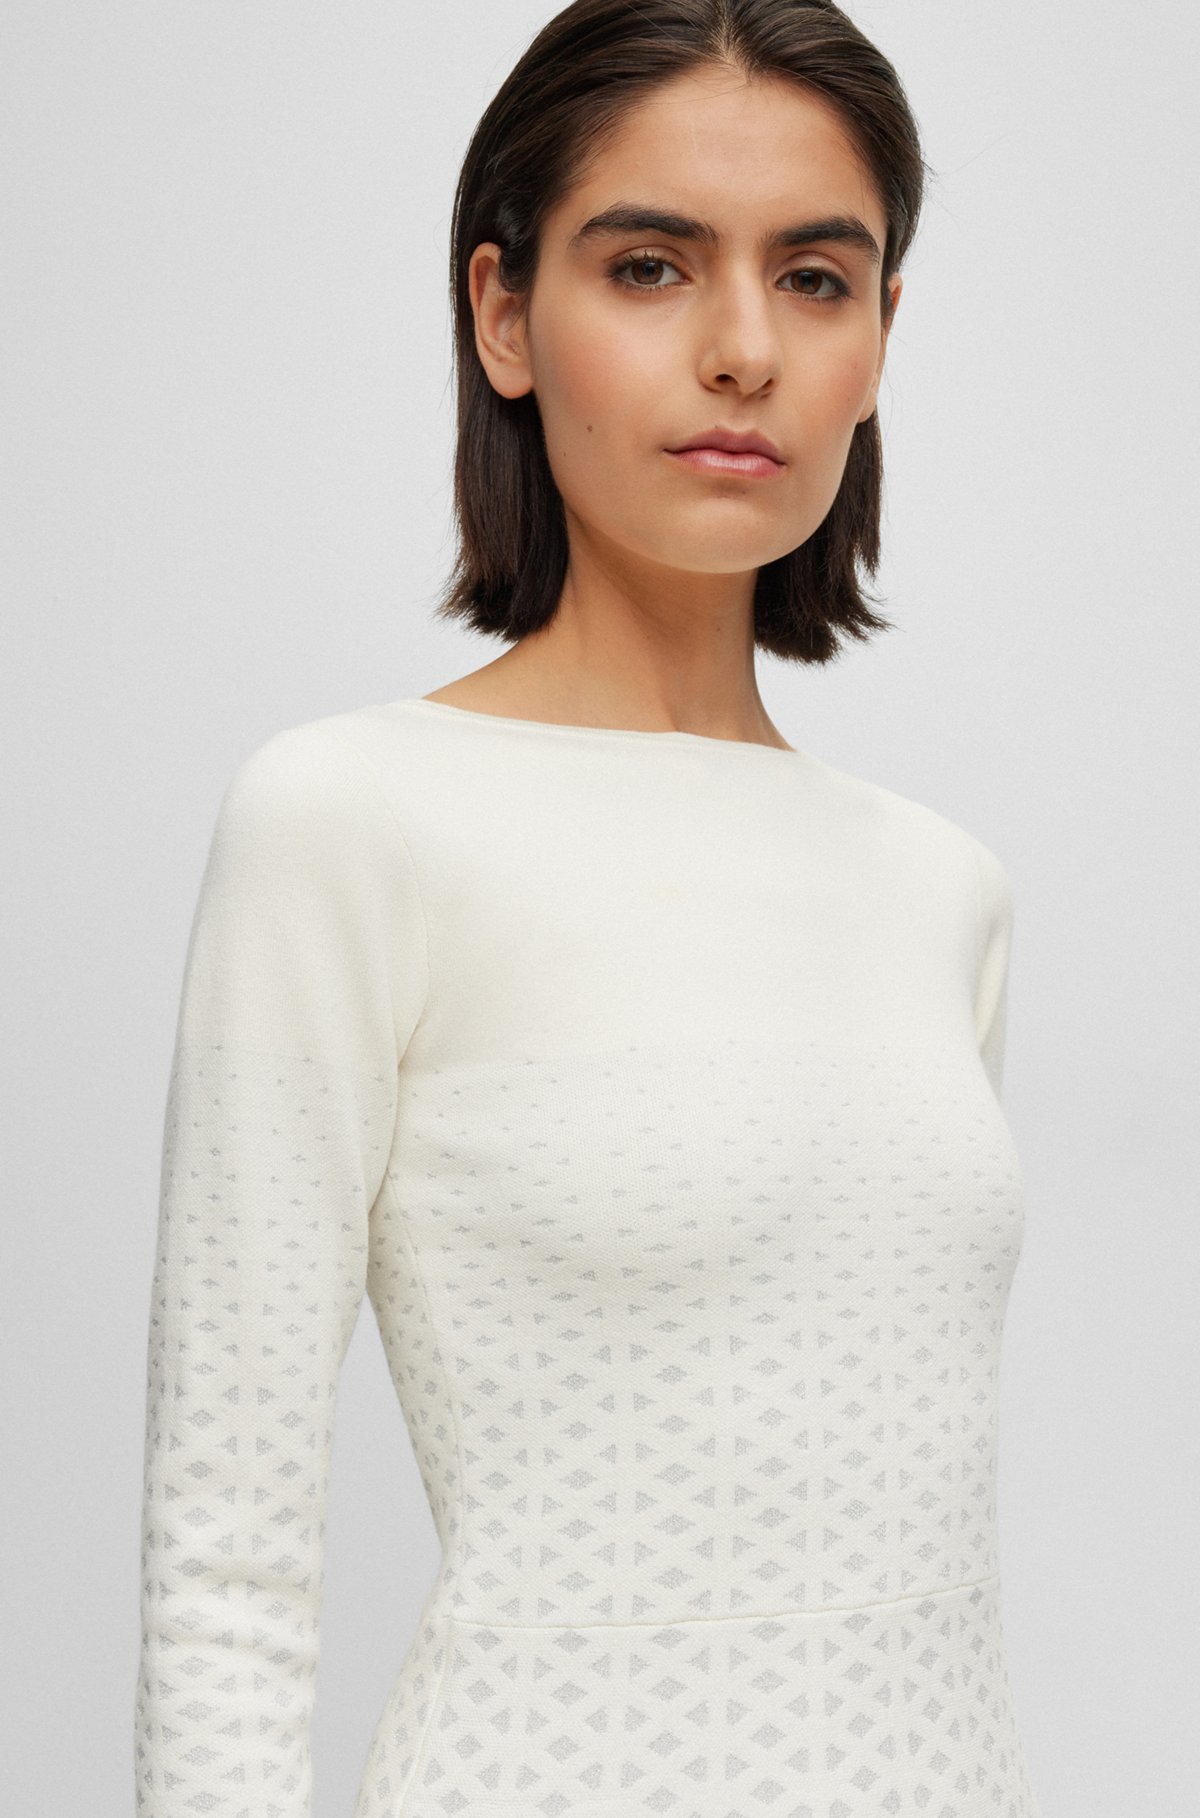 Long-sleeved dress in degradé knitted jacquard, White